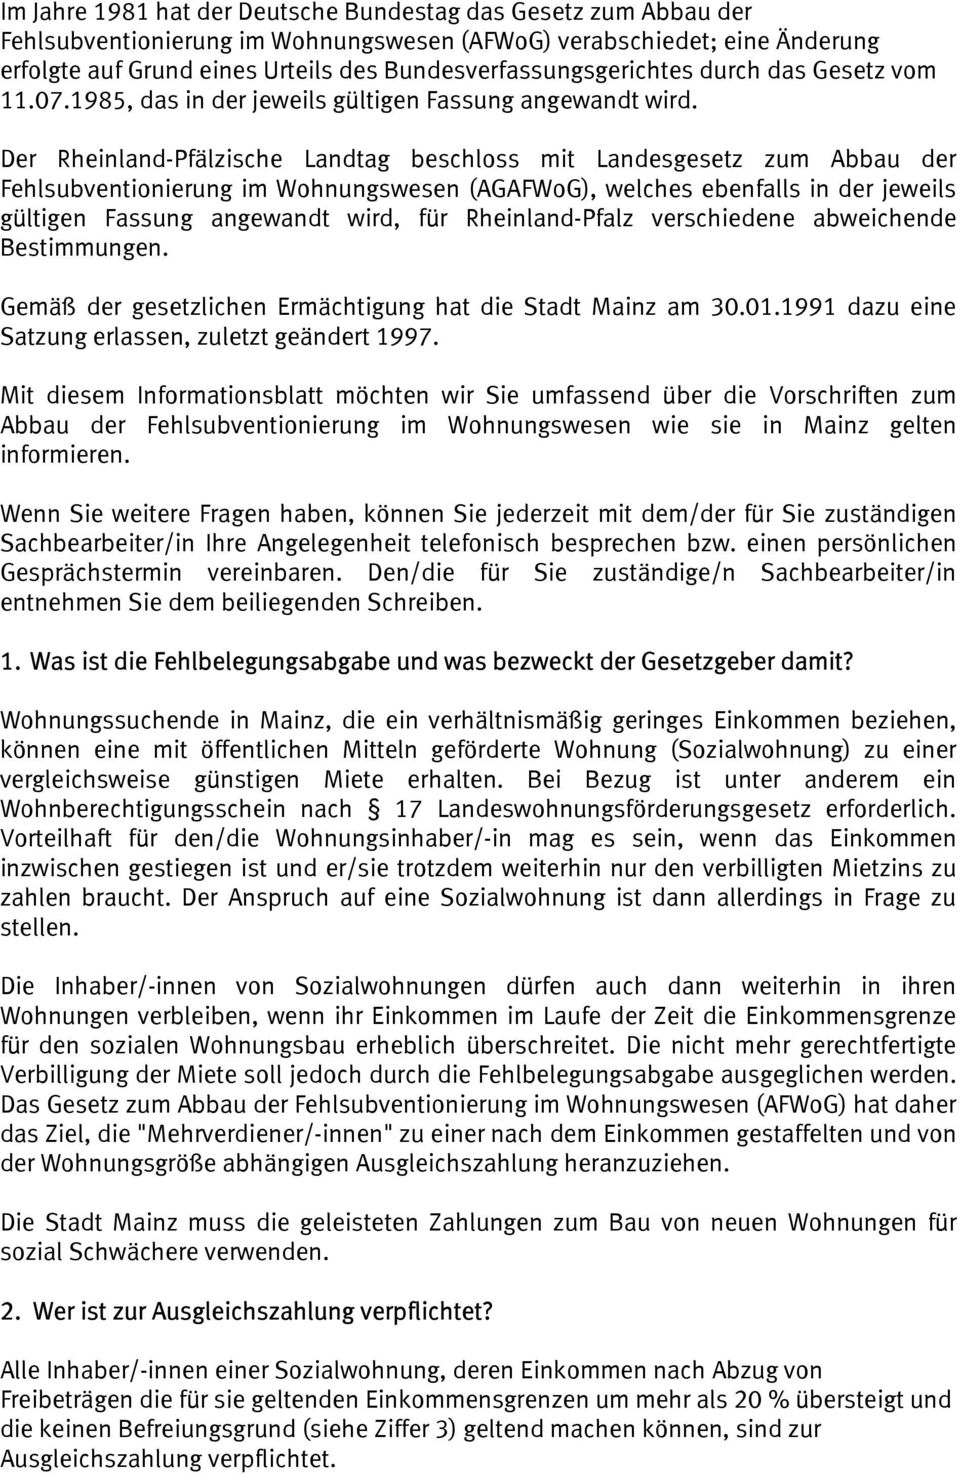 Der Rheinland-Pfälzische Landtag beschloss mit Landesgesetz zum Abbau der Fehlsubventionierung im Wohnungswesen (AGAFWoG), welches ebenfalls in der jeweils gültigen Fassung angewandt wird, für